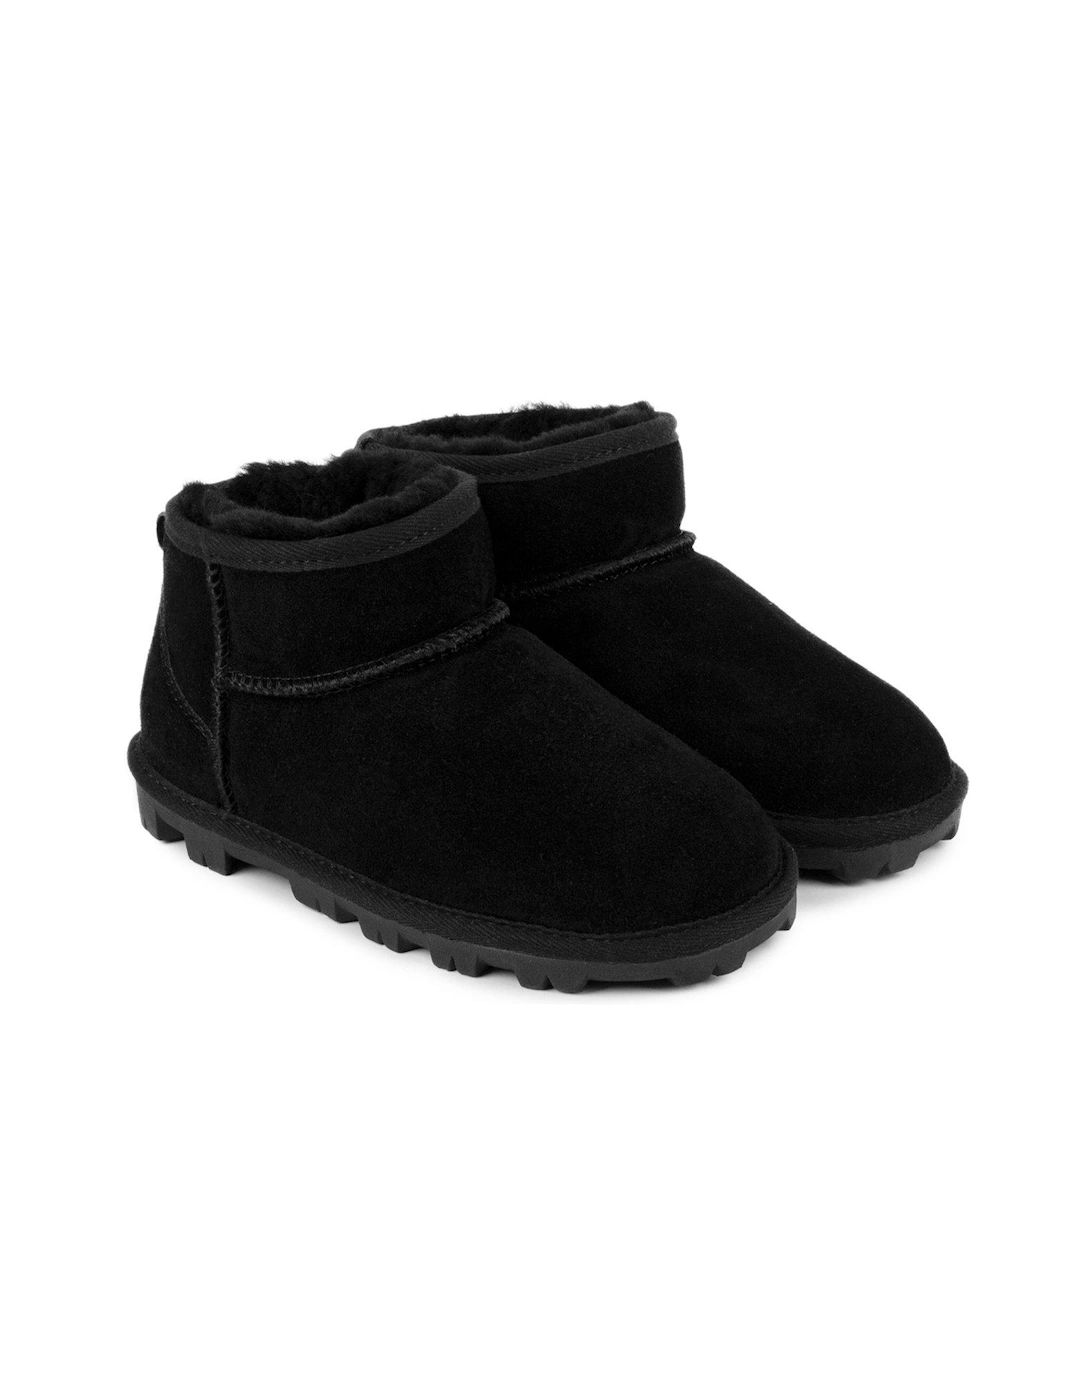 Grace mini boots - Black, 5 of 4